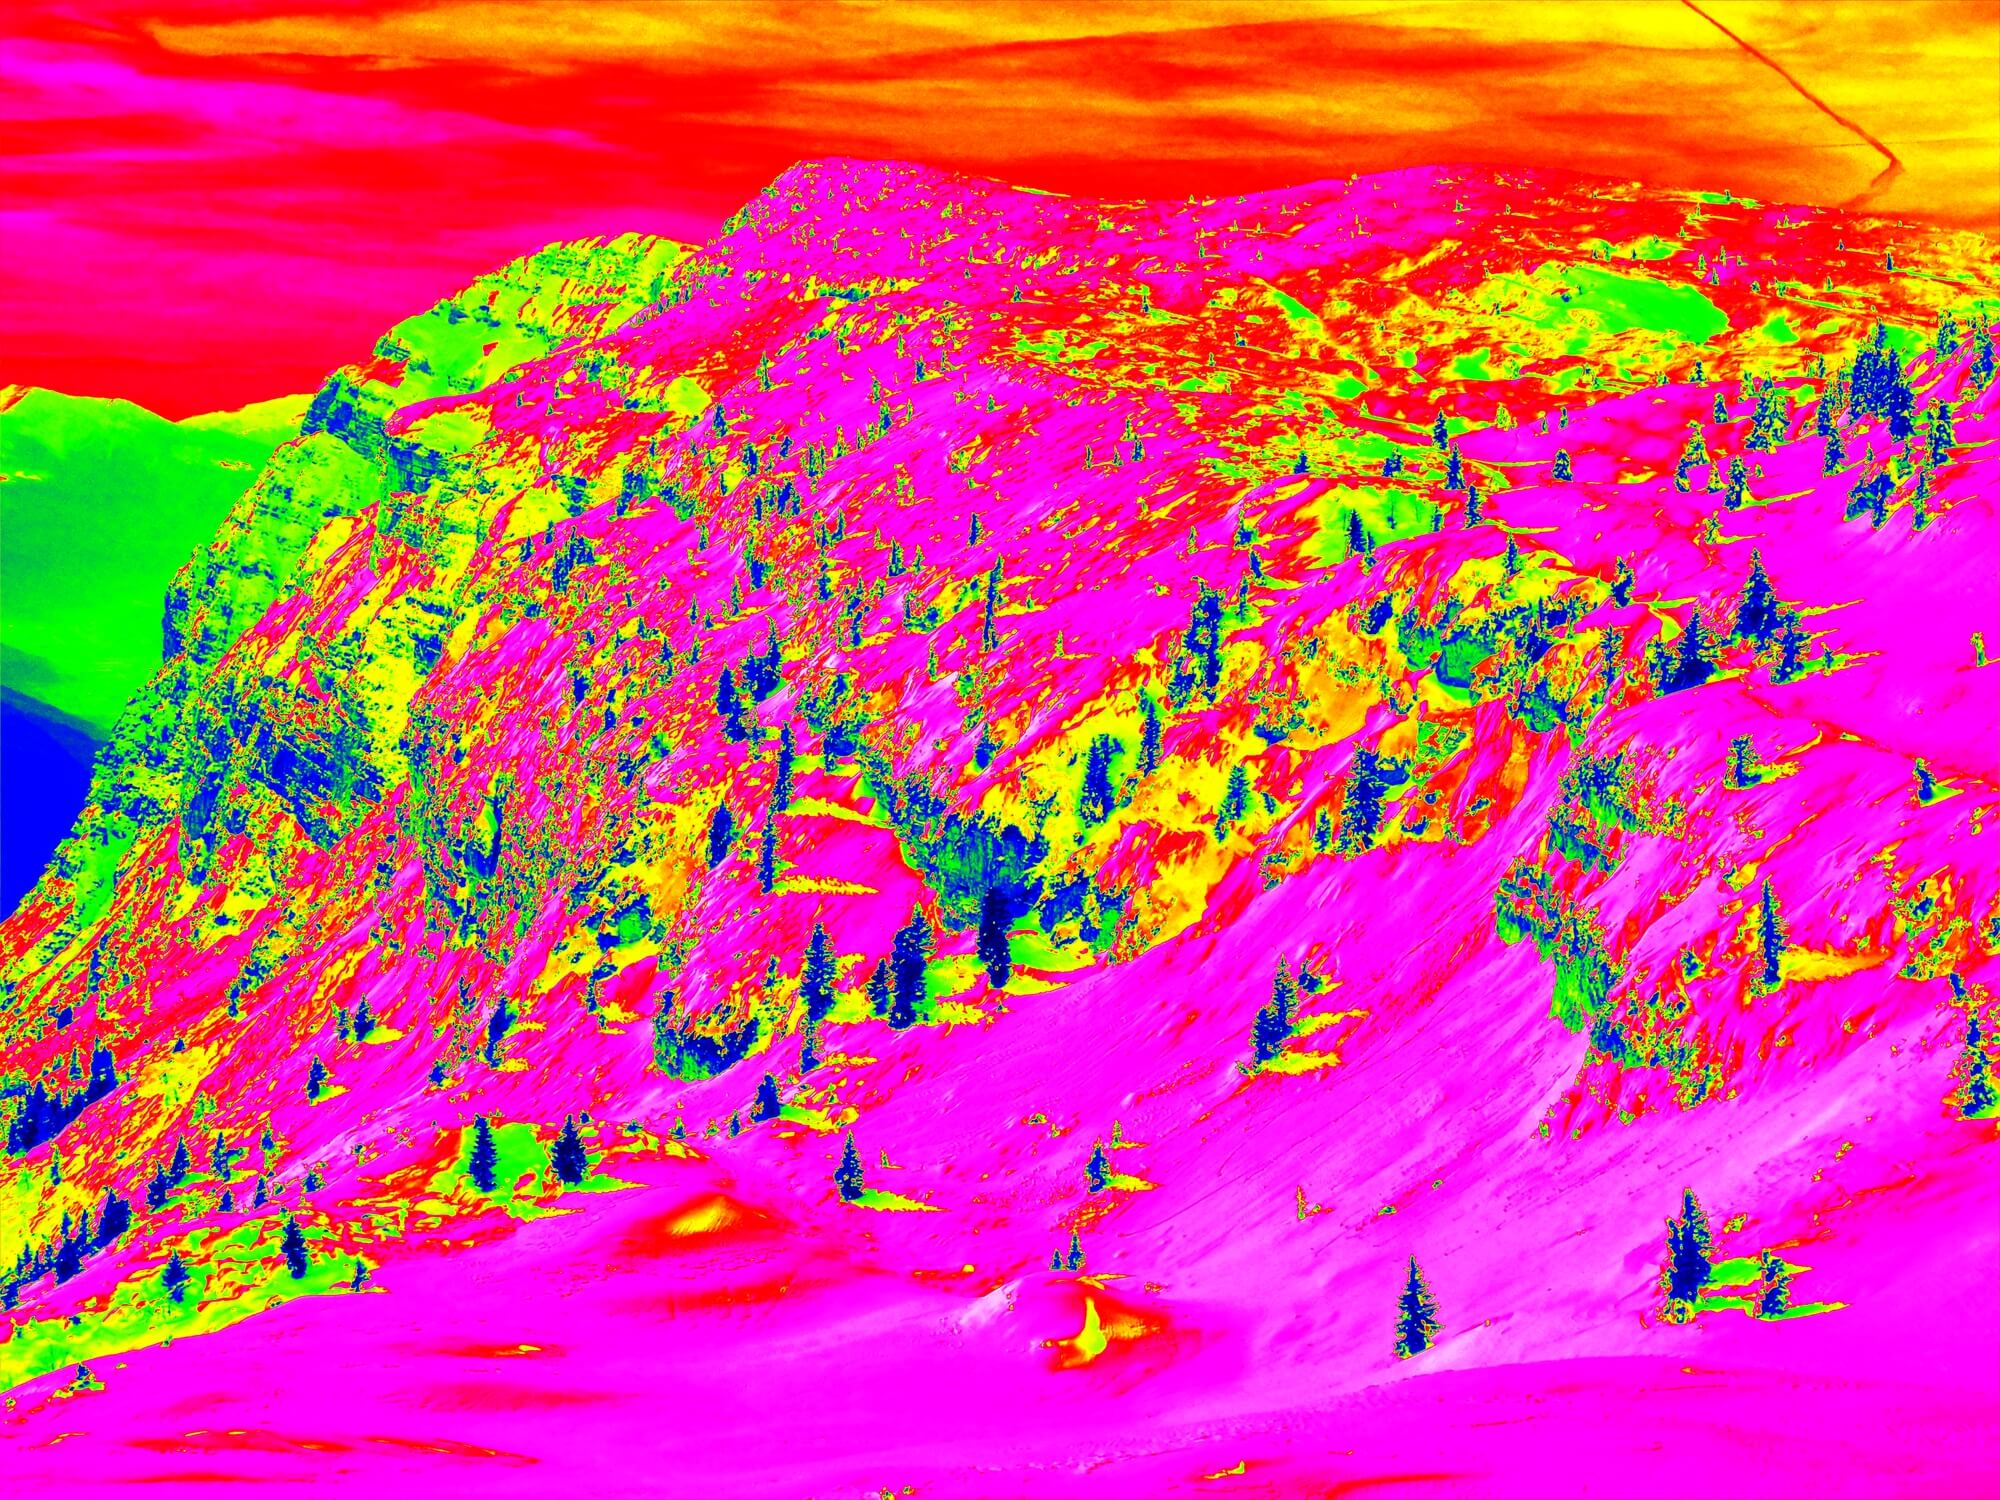 التصوير بالأشعة تحت الحمراء لمنتجع للتزلج في أوروبا. الصورة: موقع إيداع الصور.com